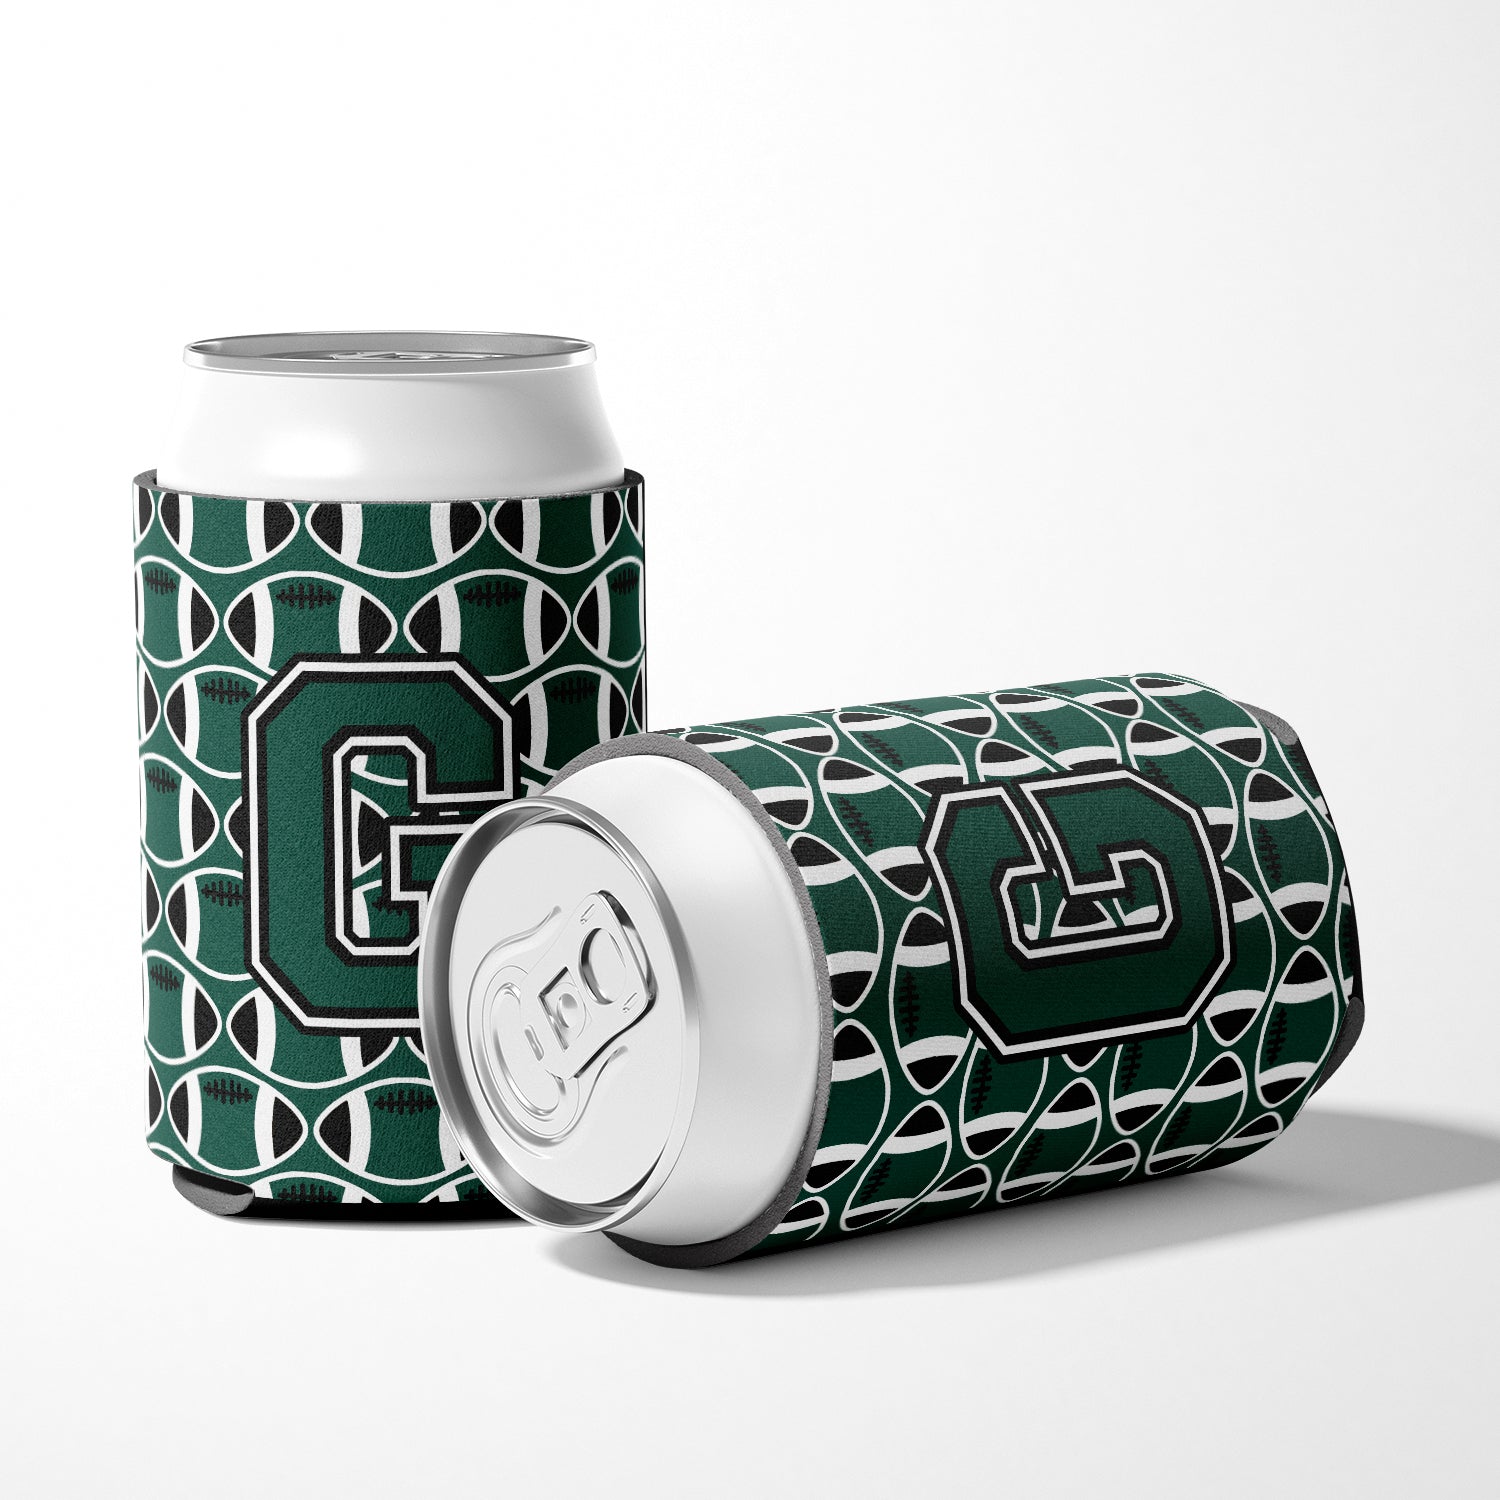 Letter G Football Green and White Can or Bottle Hugger CJ1071-GCC.